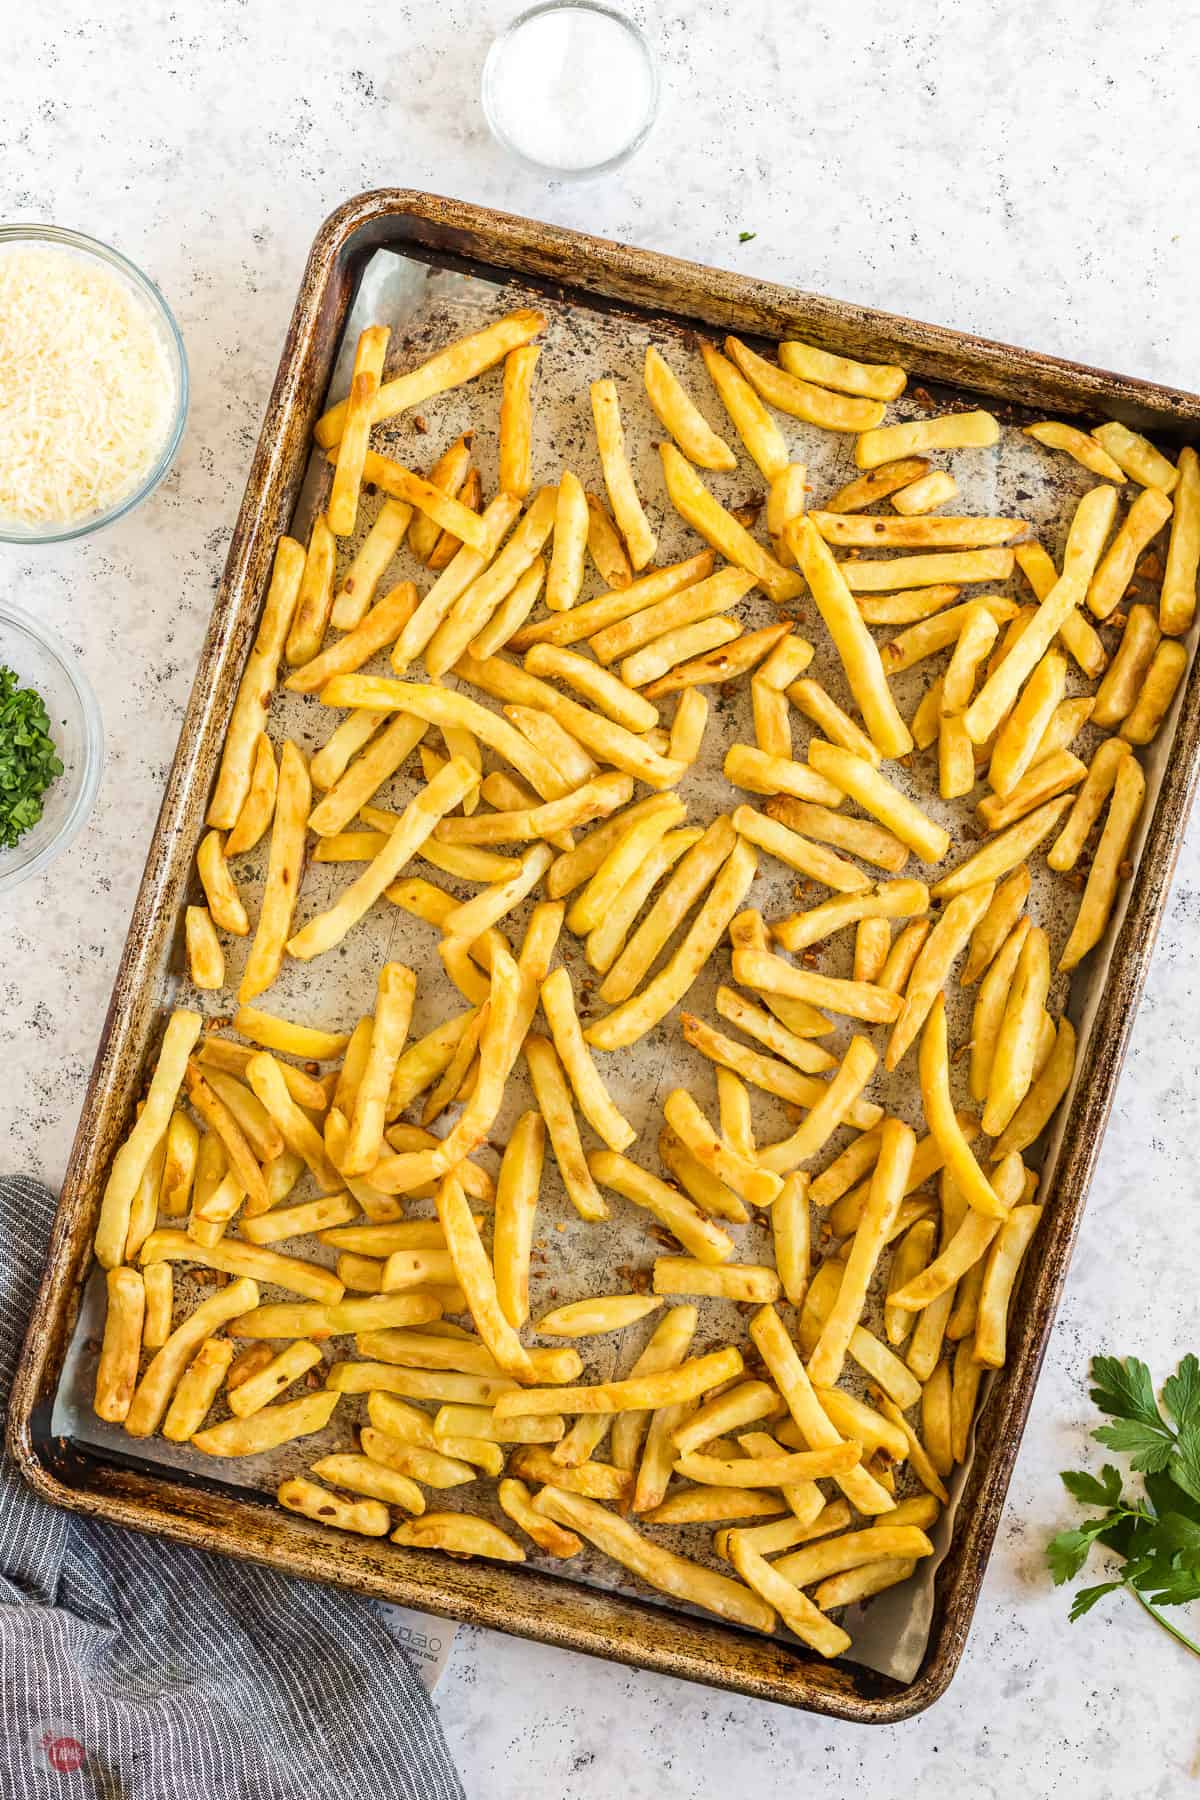 sheet pan of baked fries